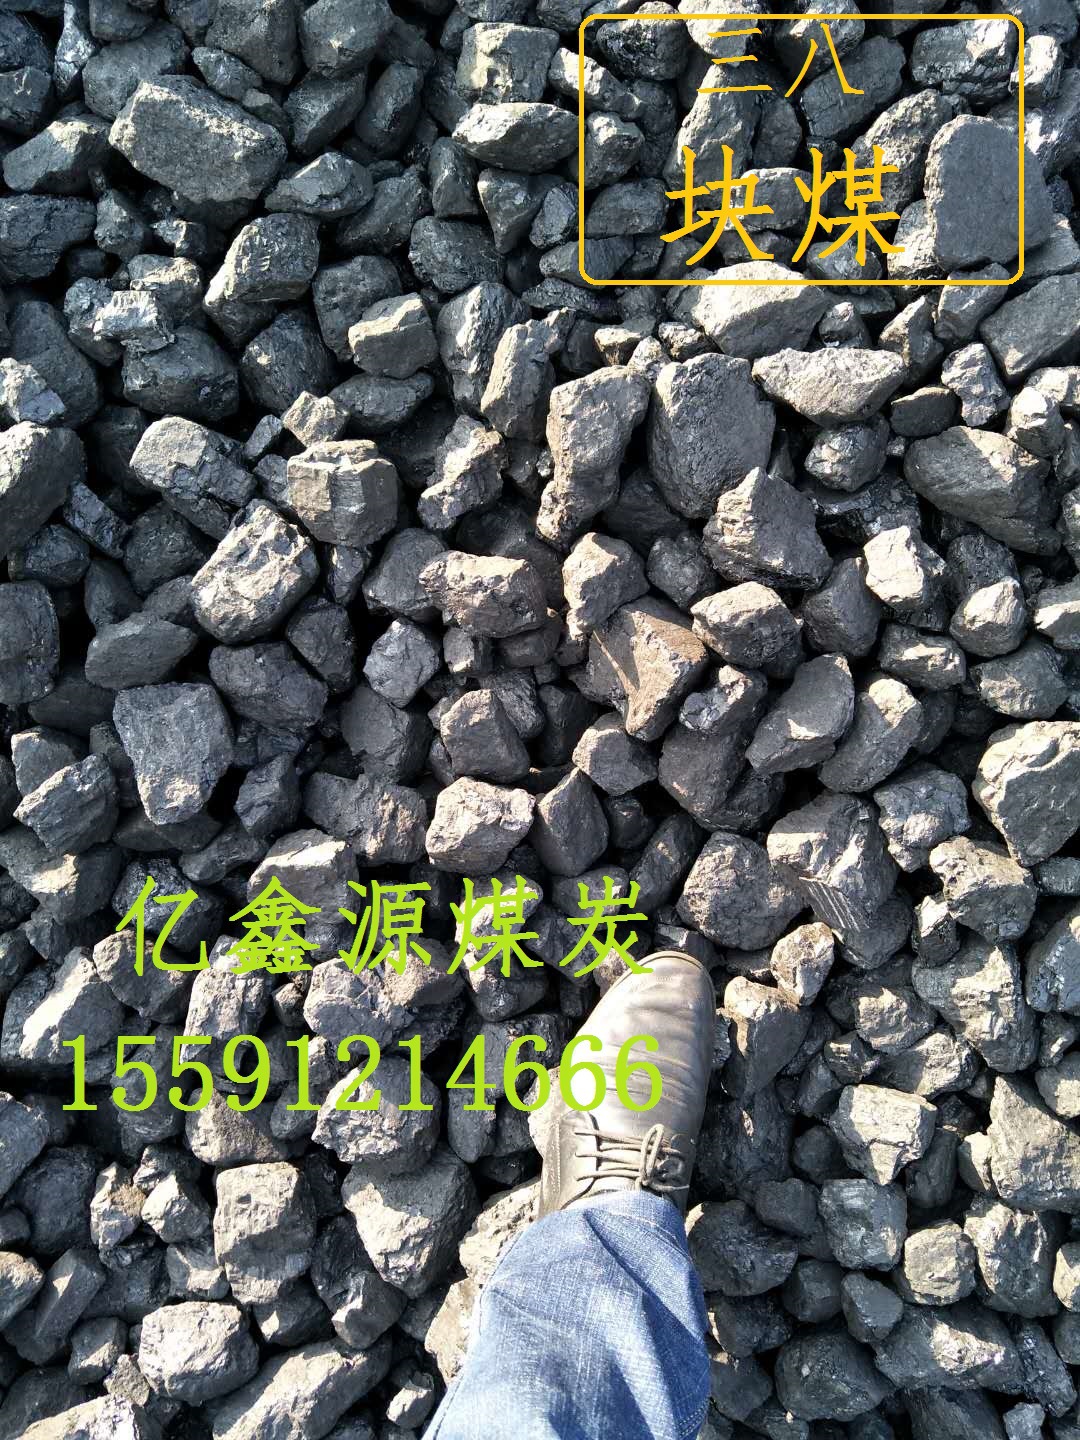 销售陕西煤炭价格13小籽煤12籽煤25籽煤炭批发价格示例图3